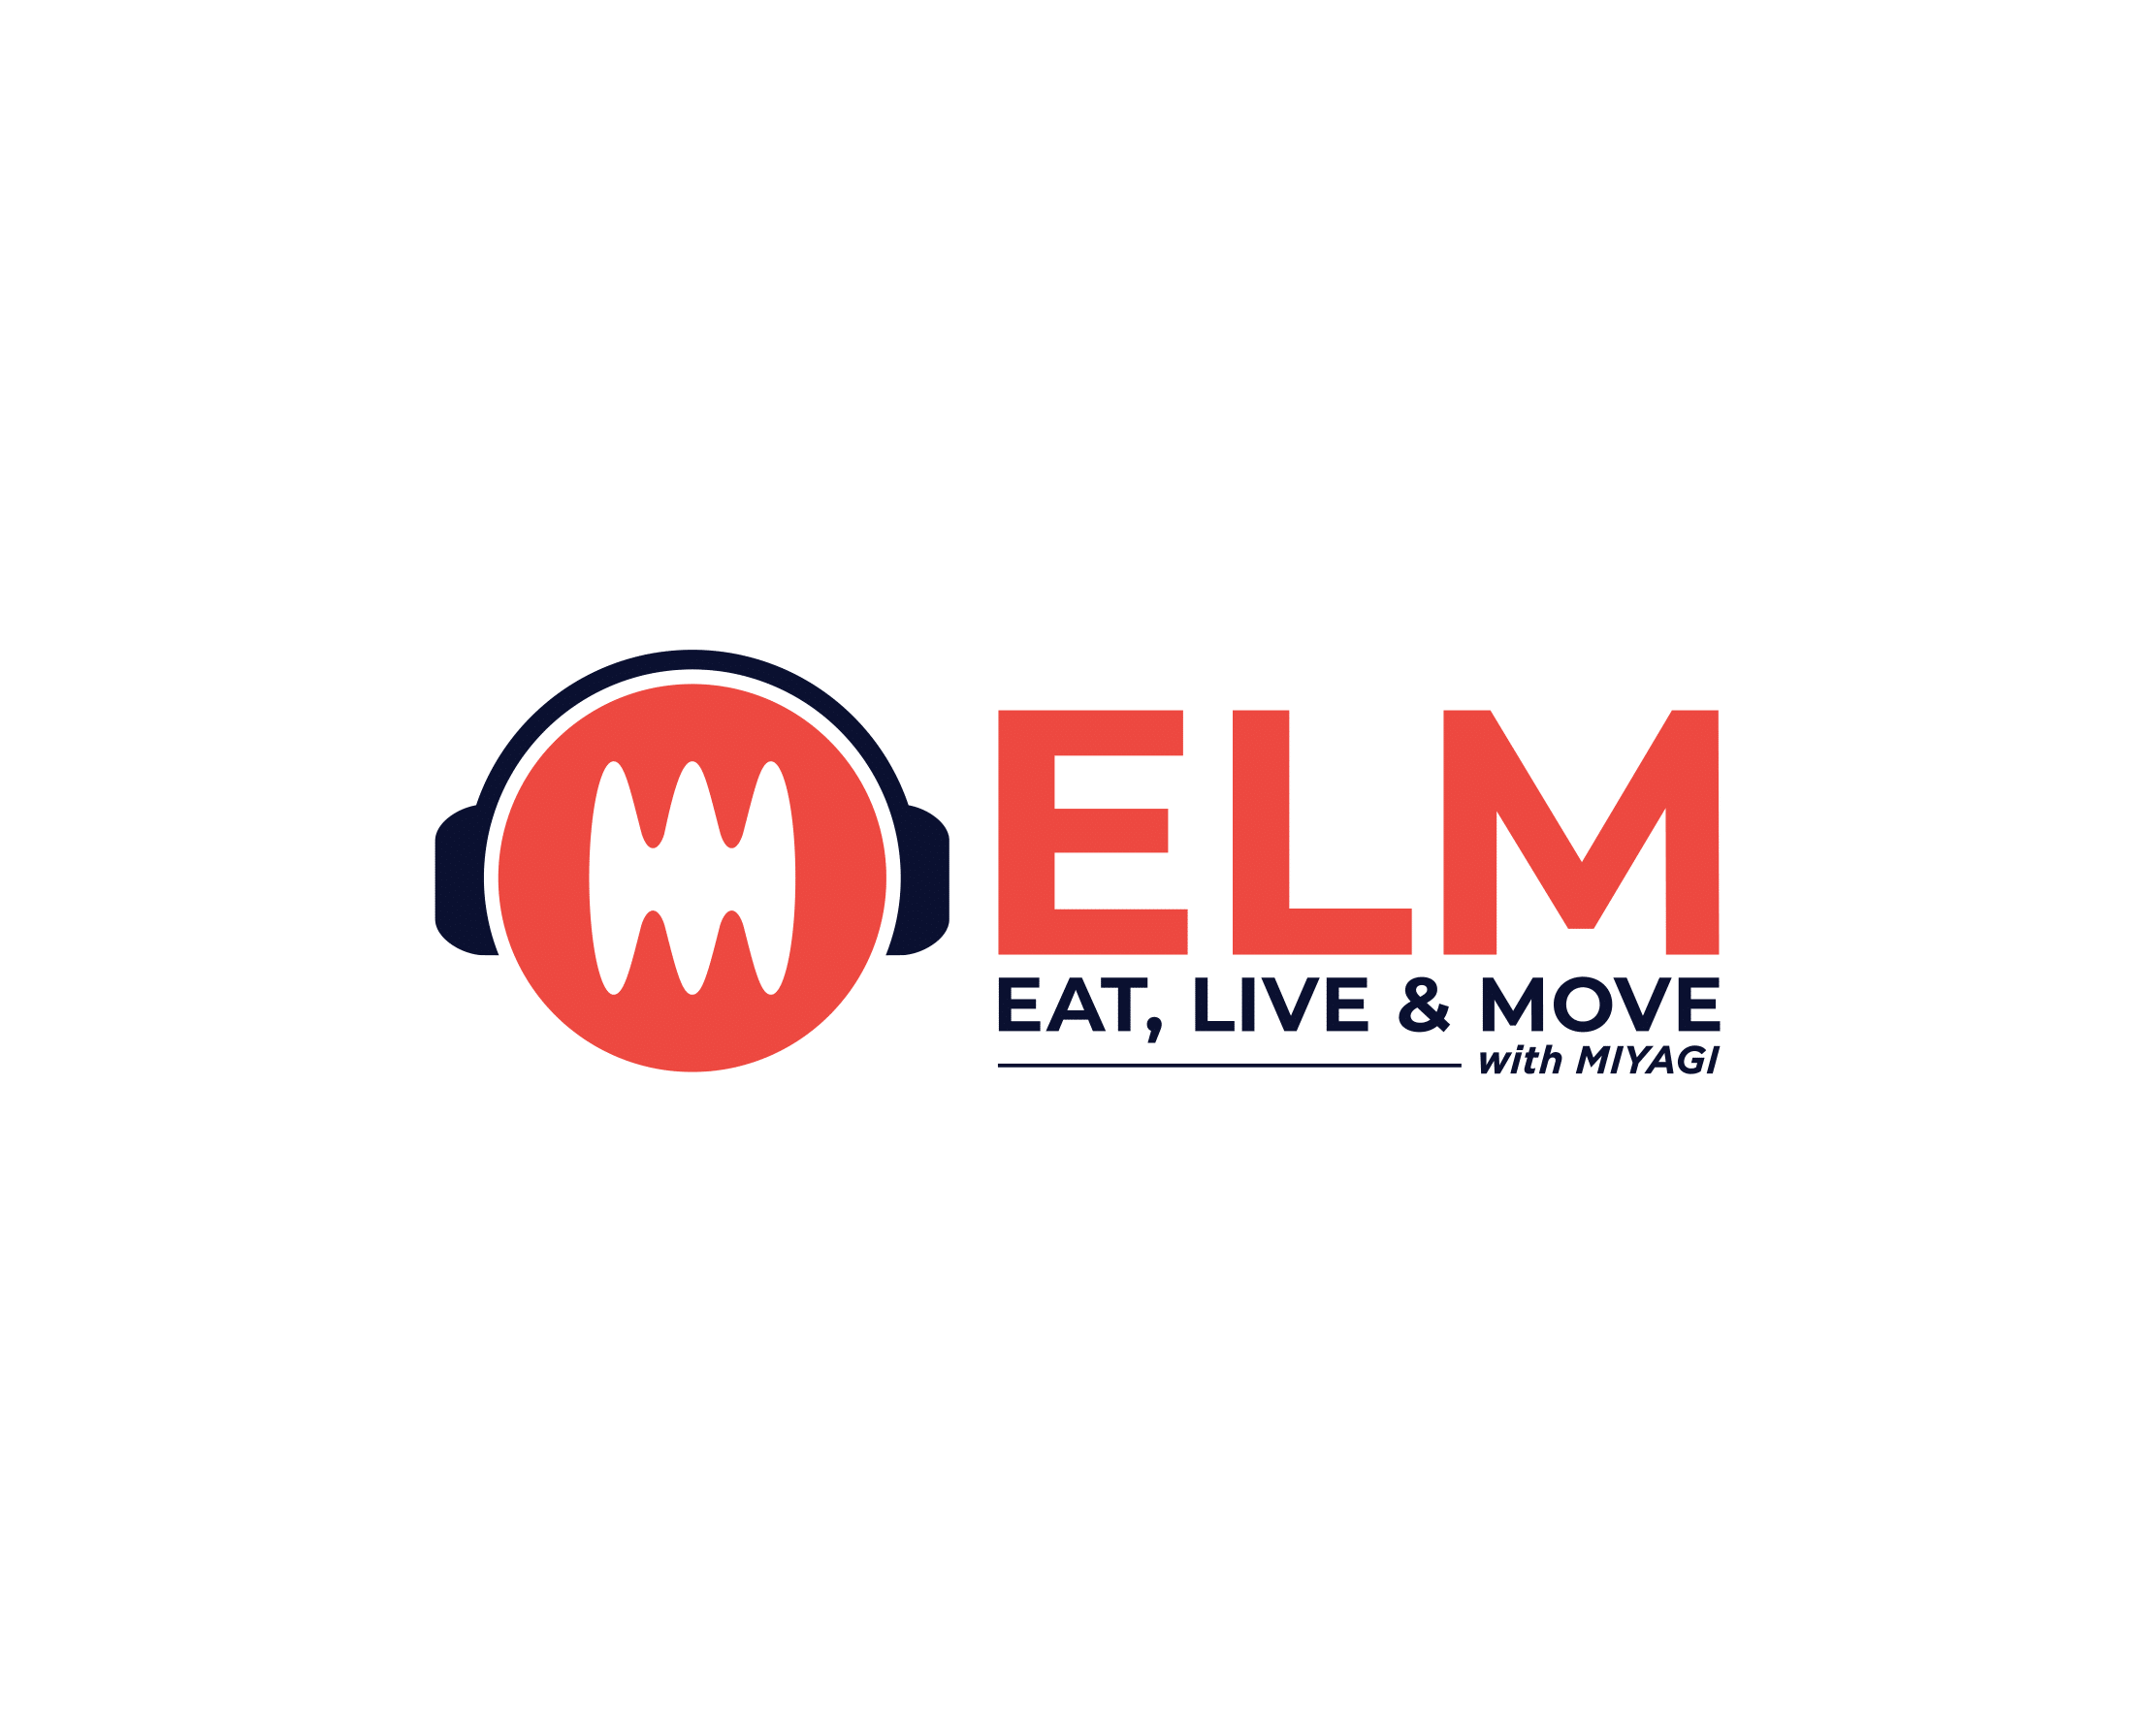 Eat, Live & Move with Miyagi